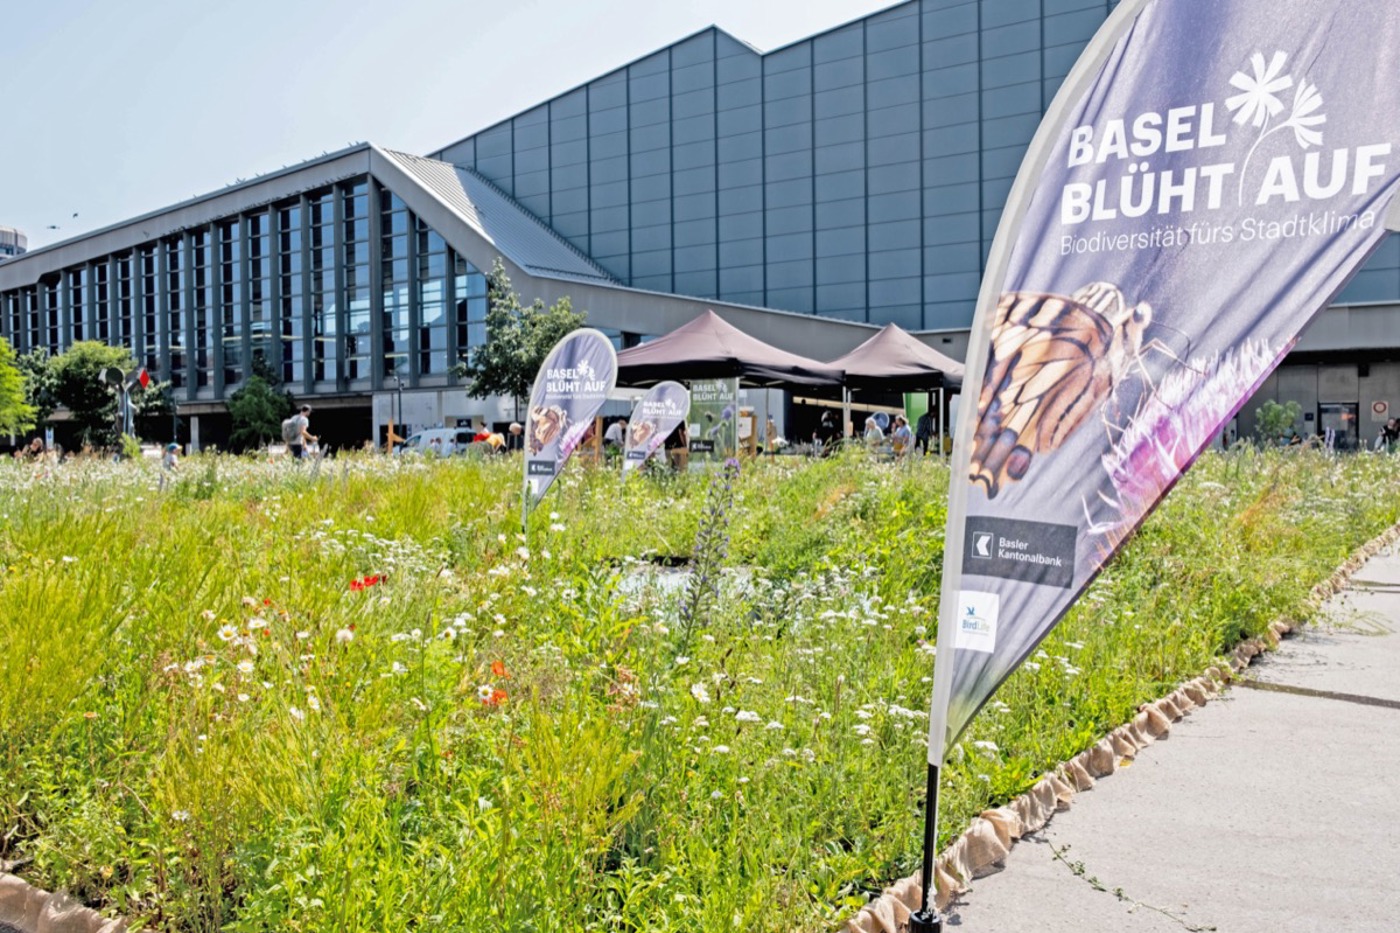 Am Naturwiesenmarkt Mitte Juni startete die Kooperation «Basel blüht auf» von BirdLife Schweiz mit der Basler Kantonalbank. © BirdLife